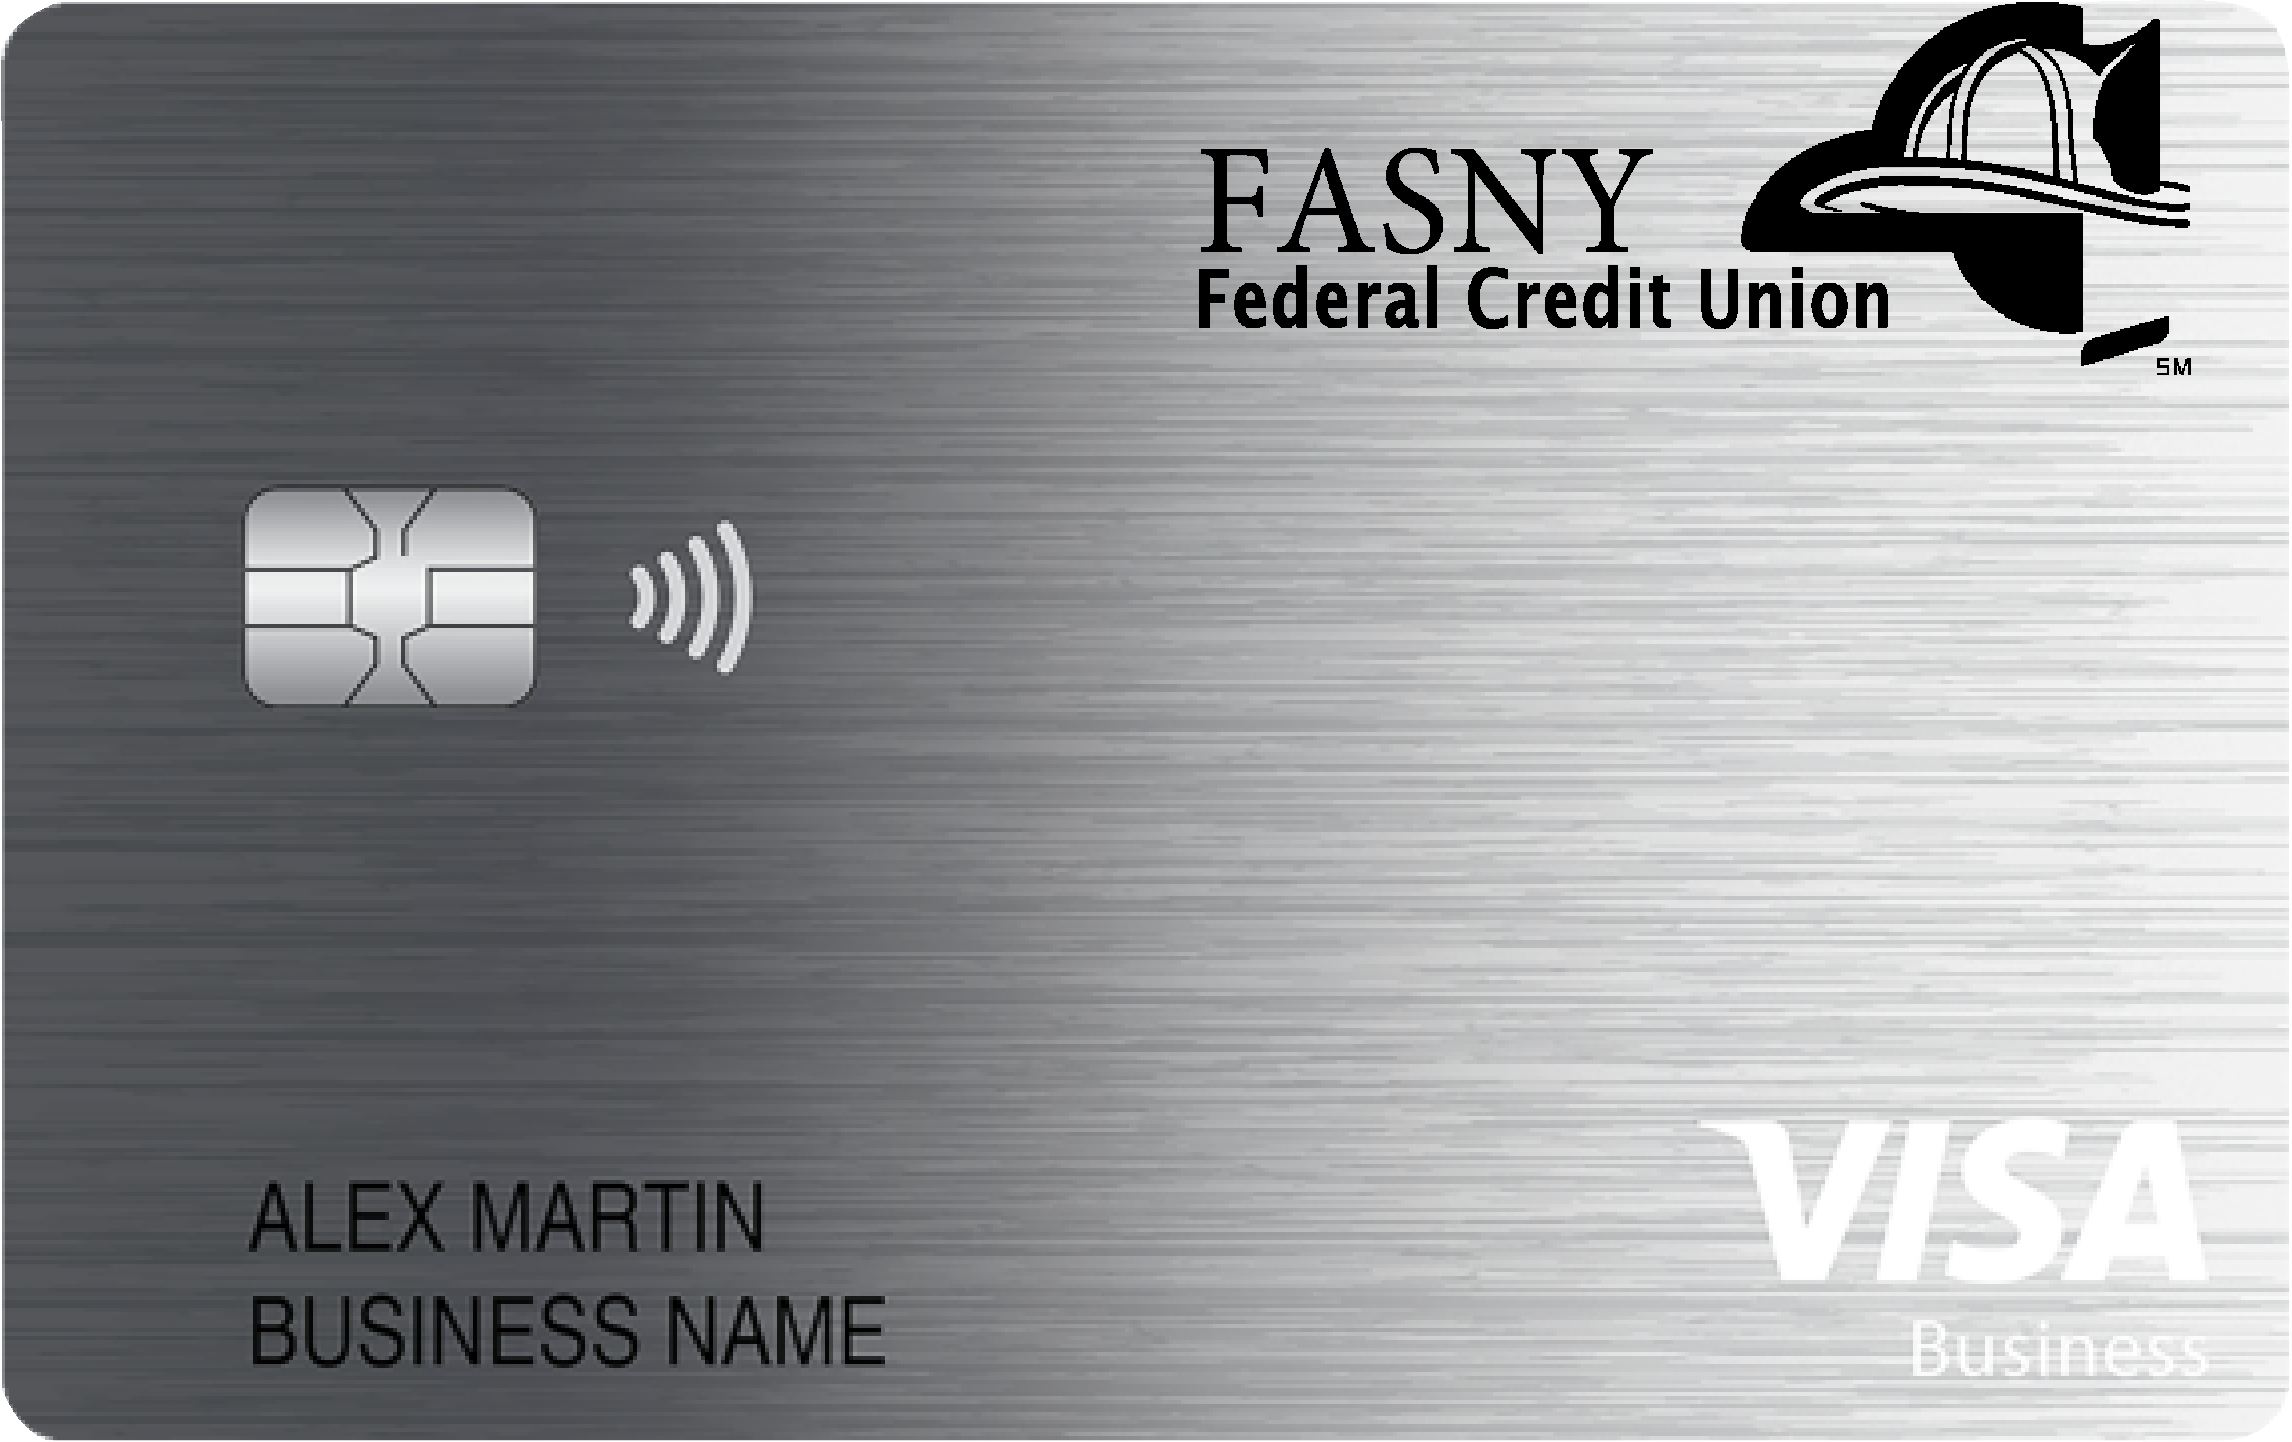 FASNY Federal Credit Union